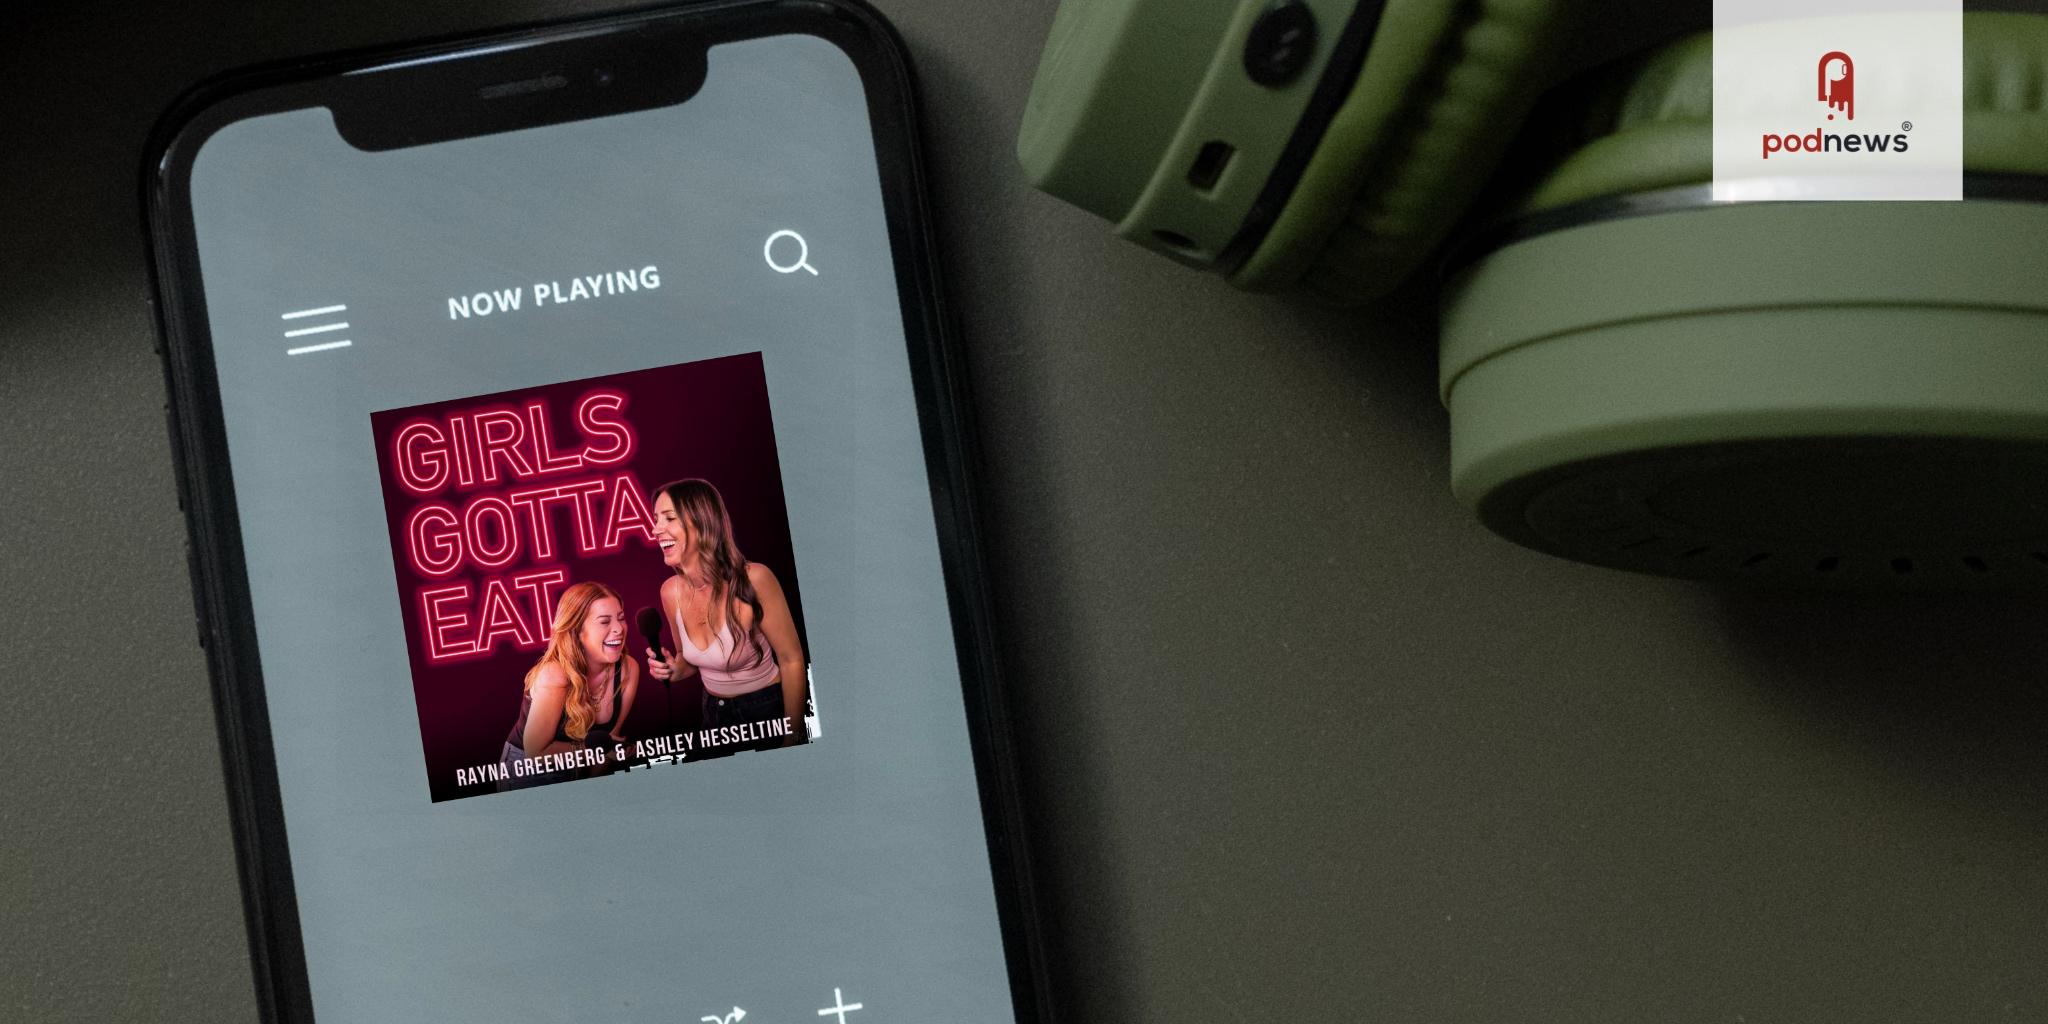 Girls Gotta Eat joins the Dear Media podcast network